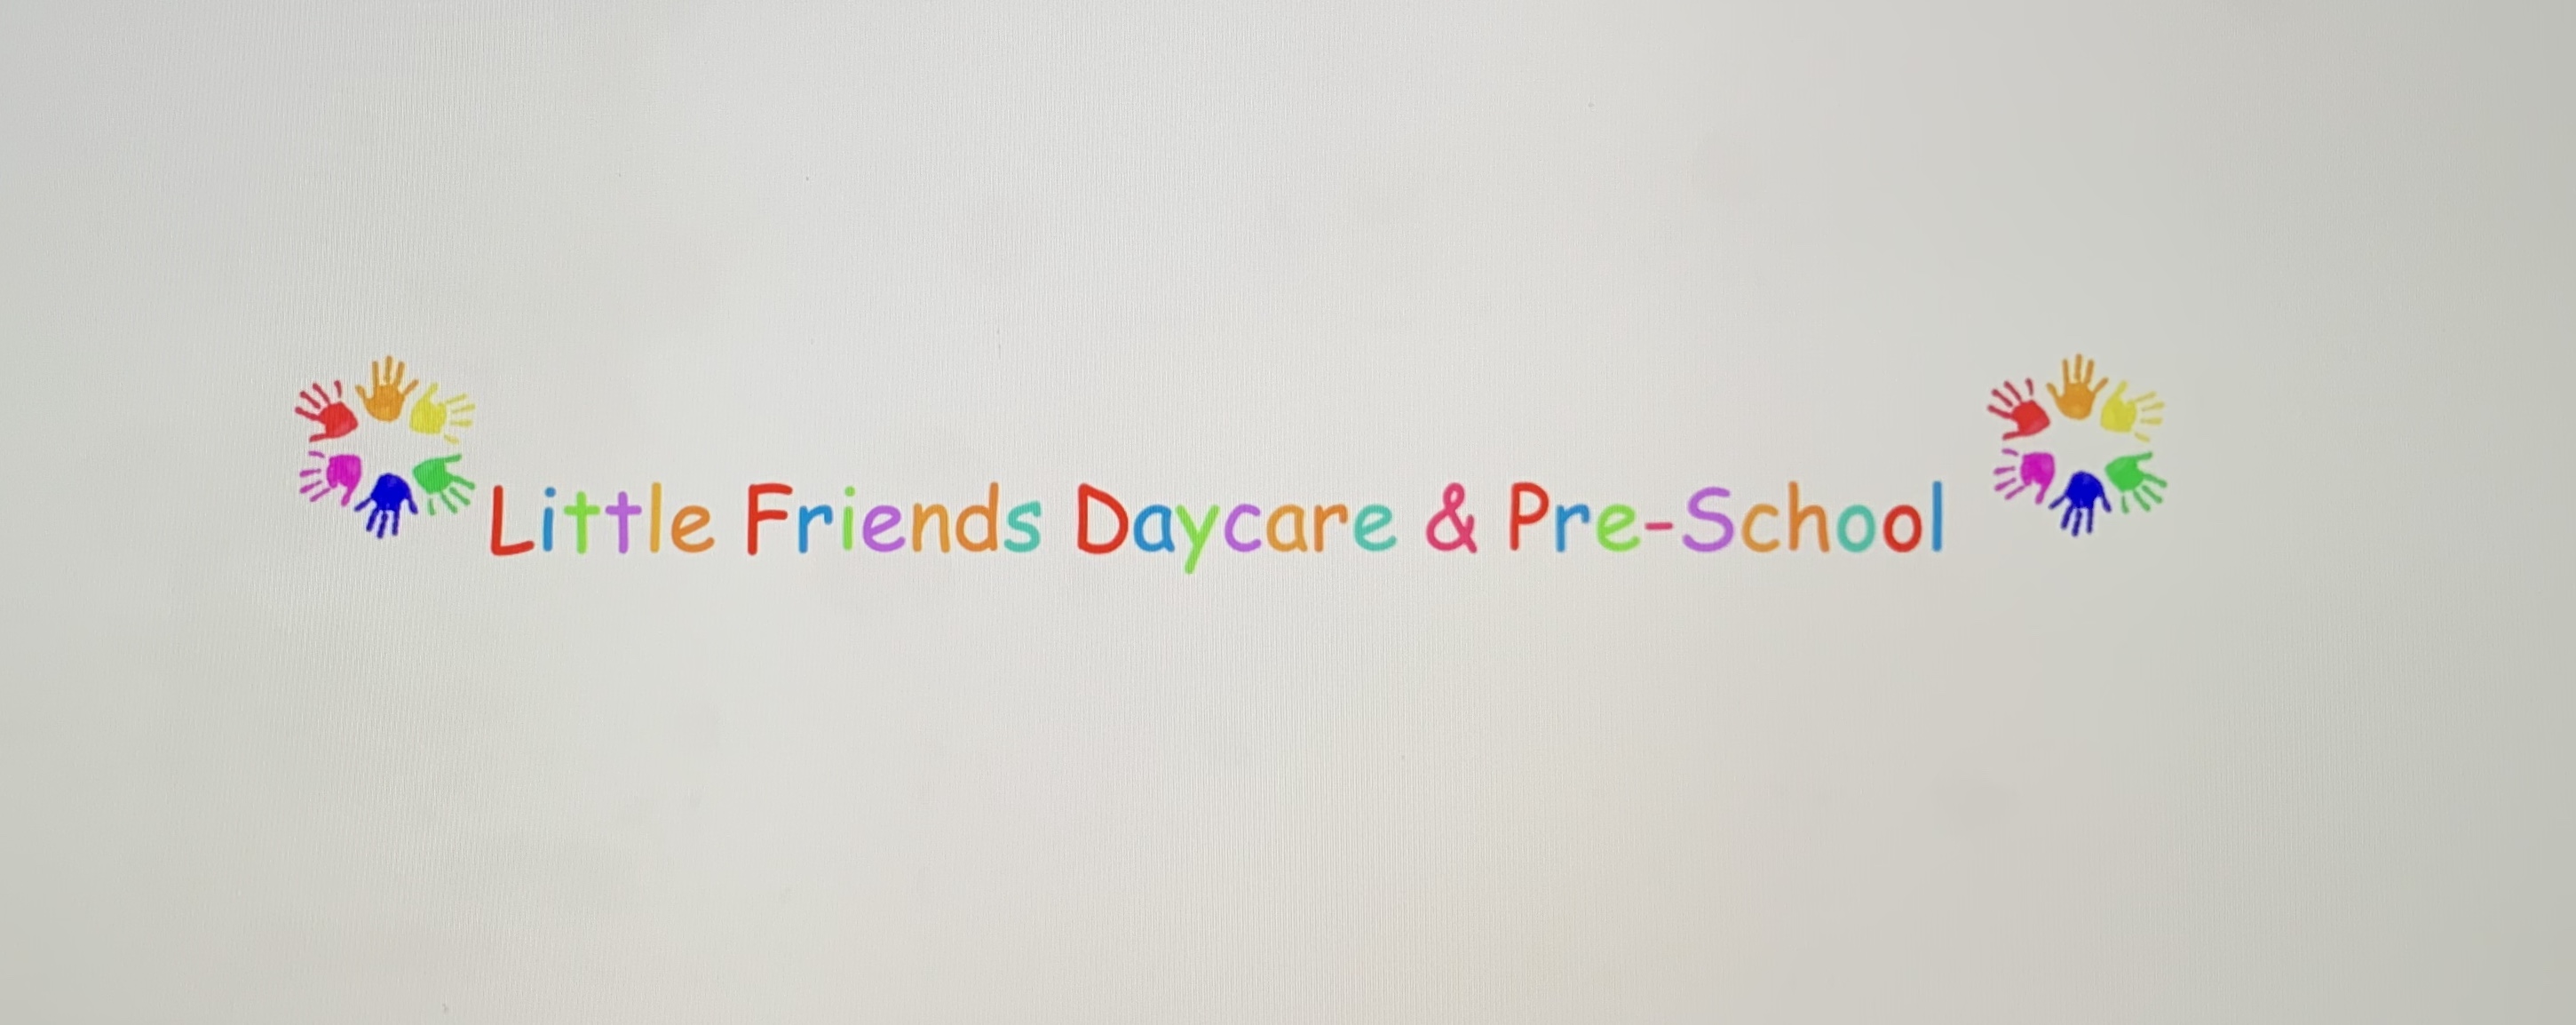 Little Friends Daycare & Pre-School